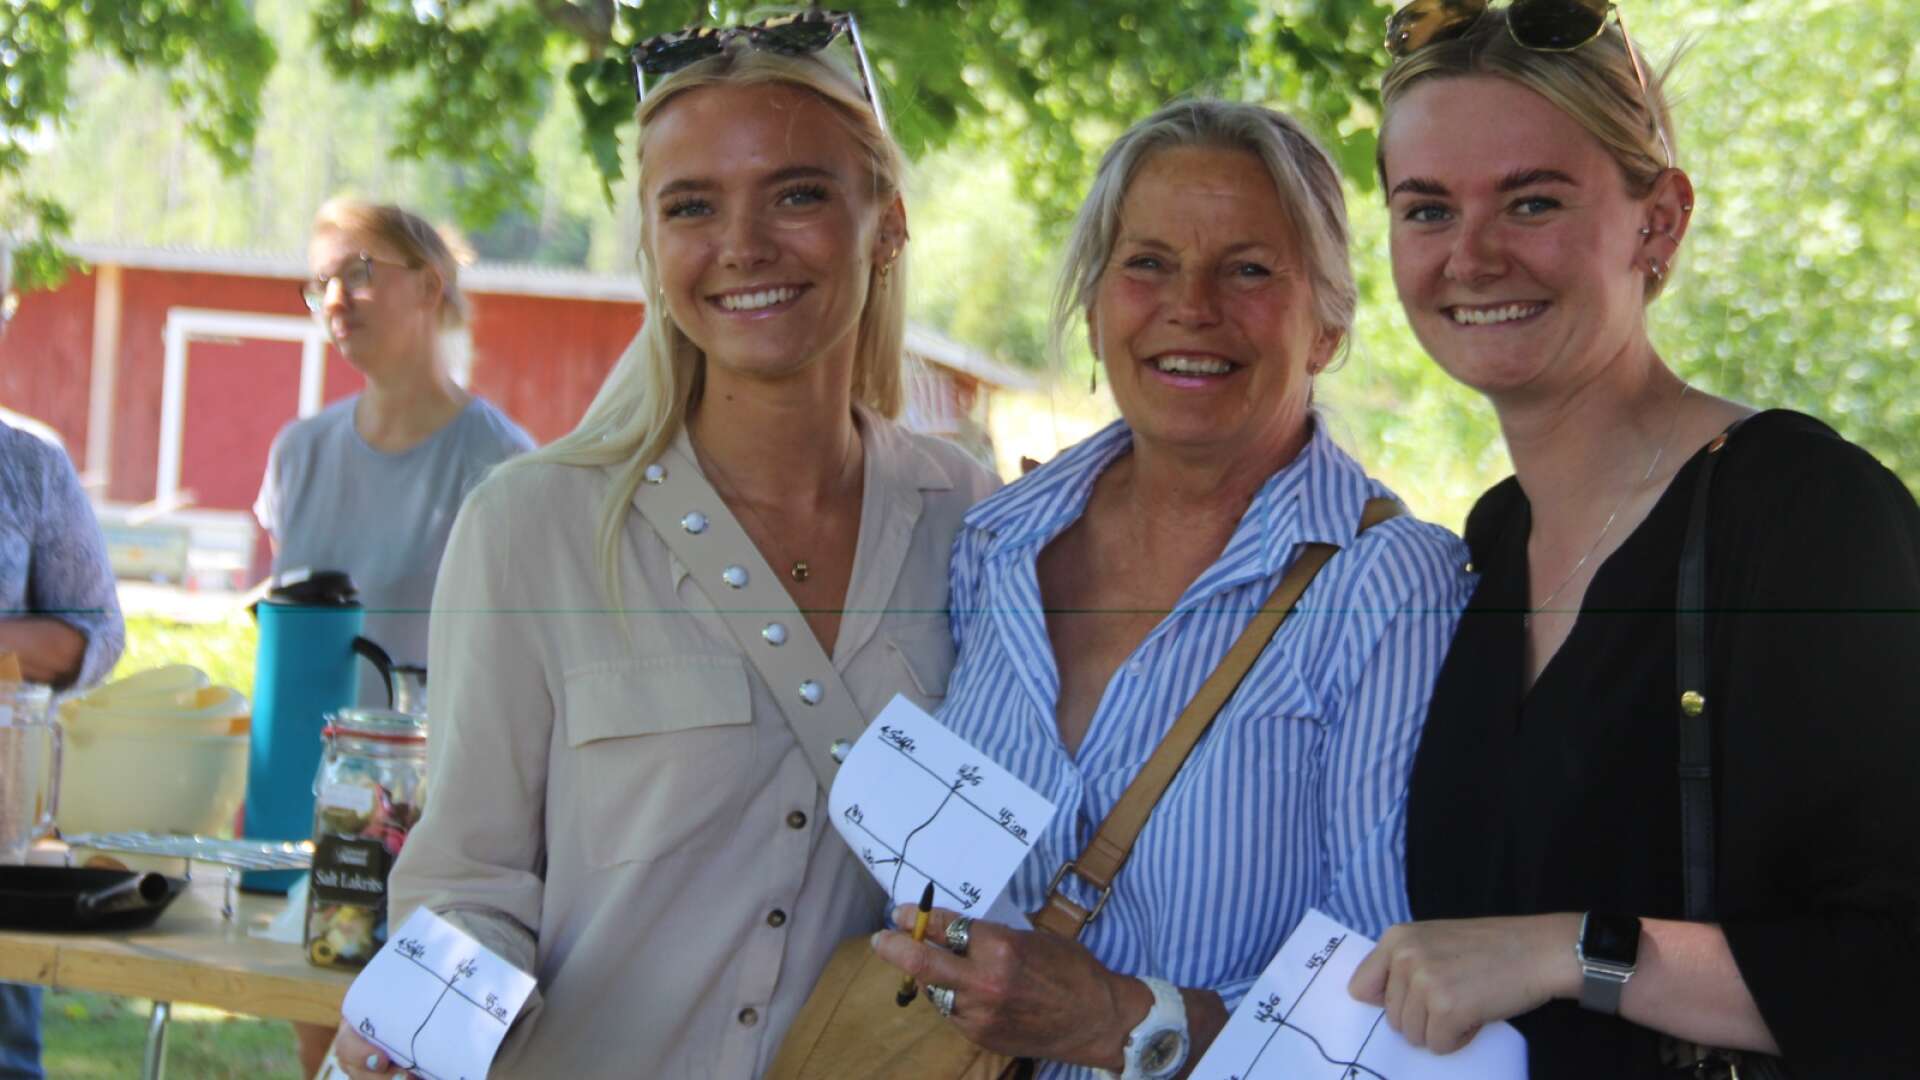 Ella och Vilma Ryhr från trakterna kring Göteborg var på besök hos farmor Britt Ryhr och de passade på att göra en utflykt tillsammans. De besökte alla tre stationer på loppisloppet för att vara med och svara på frågorna.